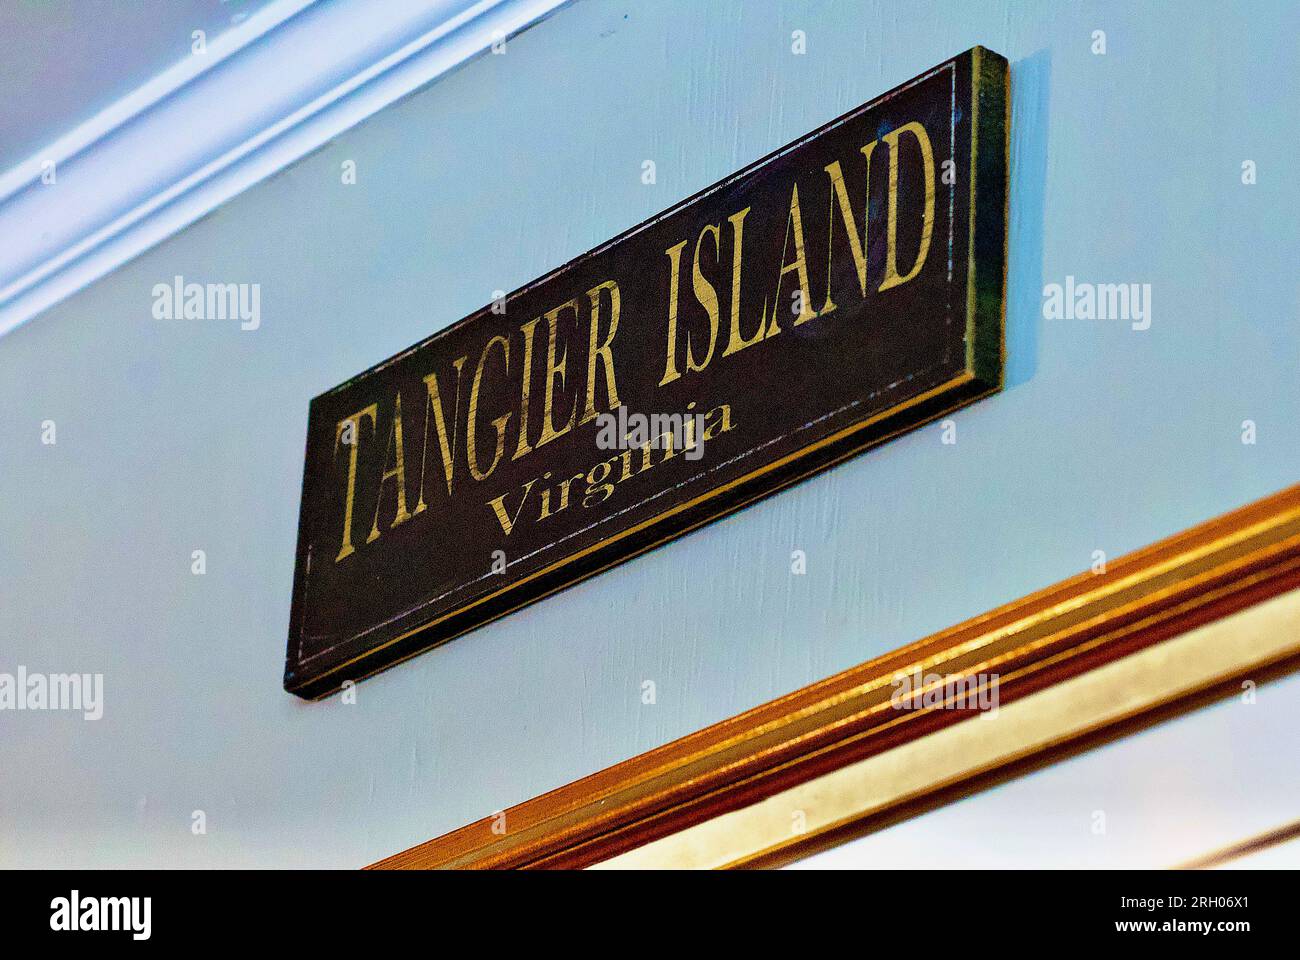 Isla de Tánger, Virginia, EE.UU. - 21 de junio de 2020: Primer plano de un cartel de 'Tangier Island Virginia' colgado en la pared de un restaurante de mariscos en la calle principal. Foto de stock